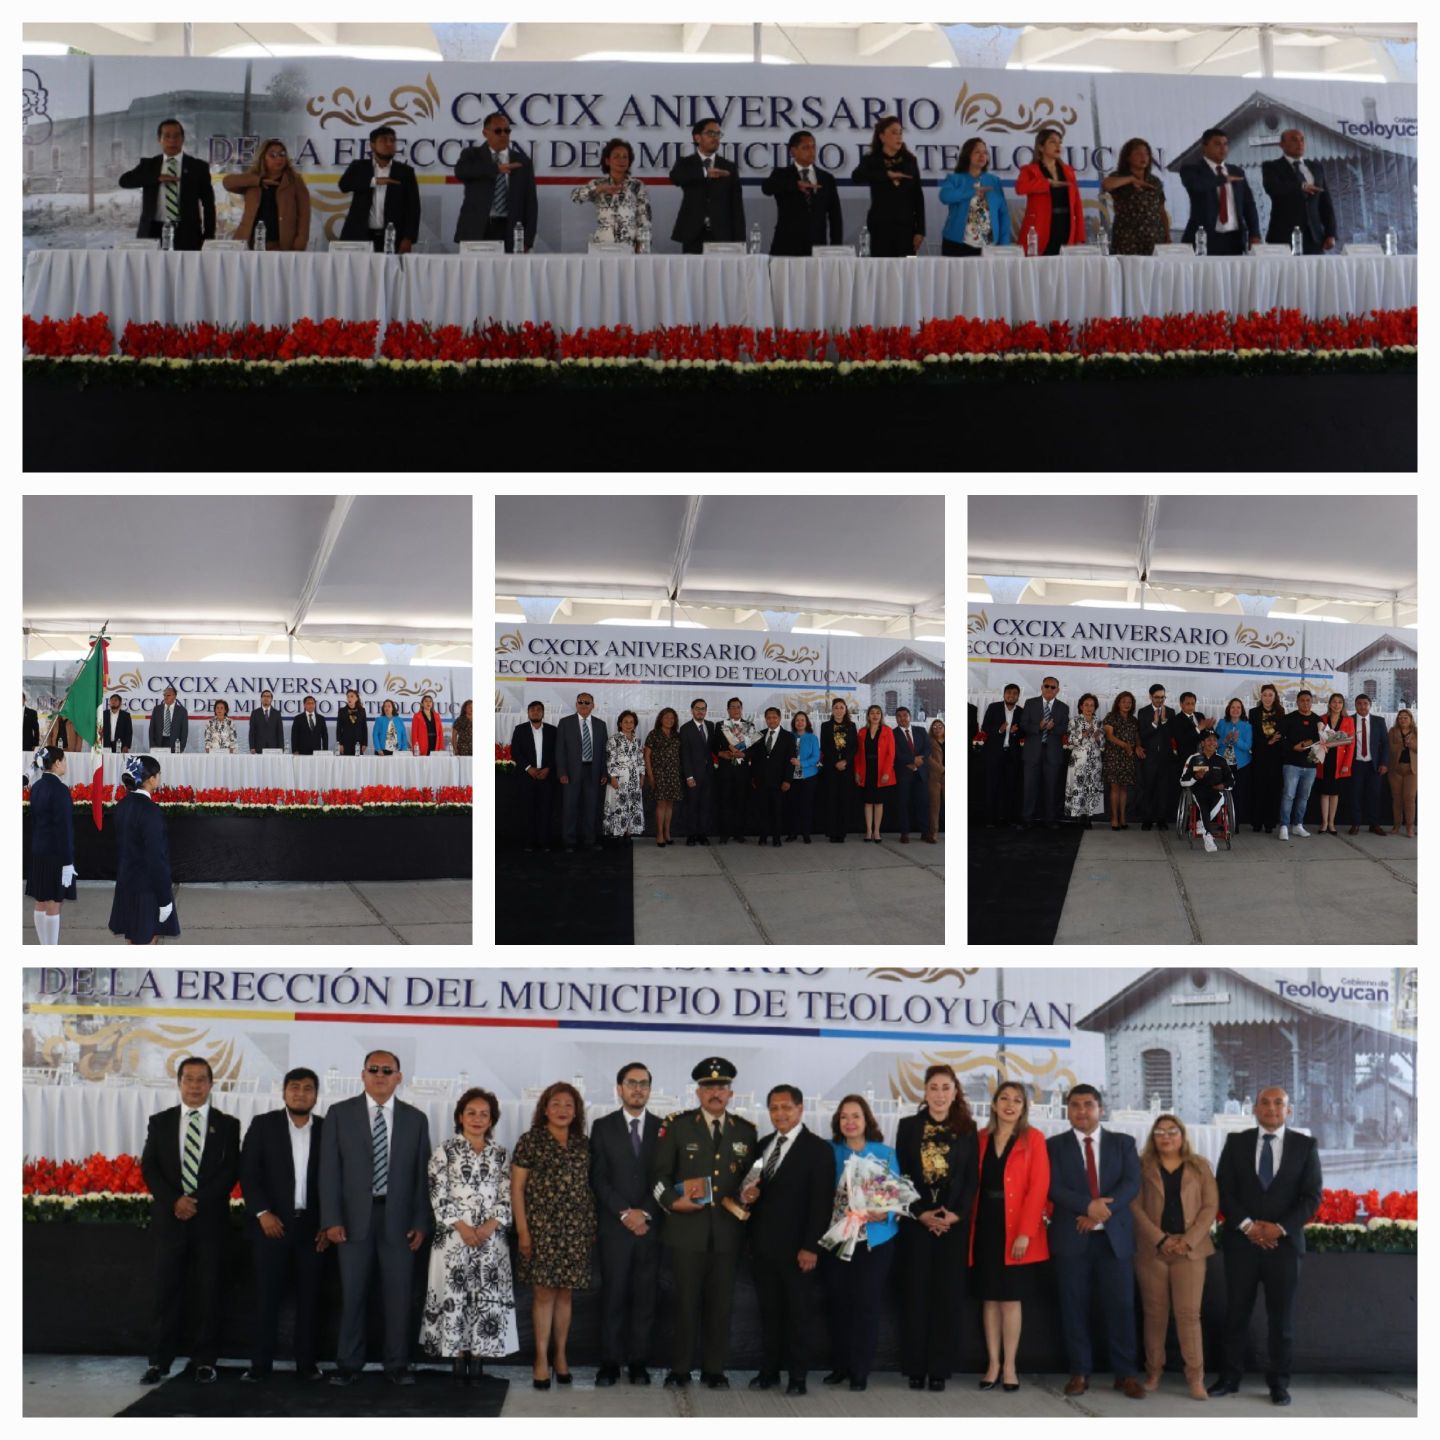 Juan Carlos Uribe Padilla celebro el CXCIX Aniversario de la Erección de Teoloyucan